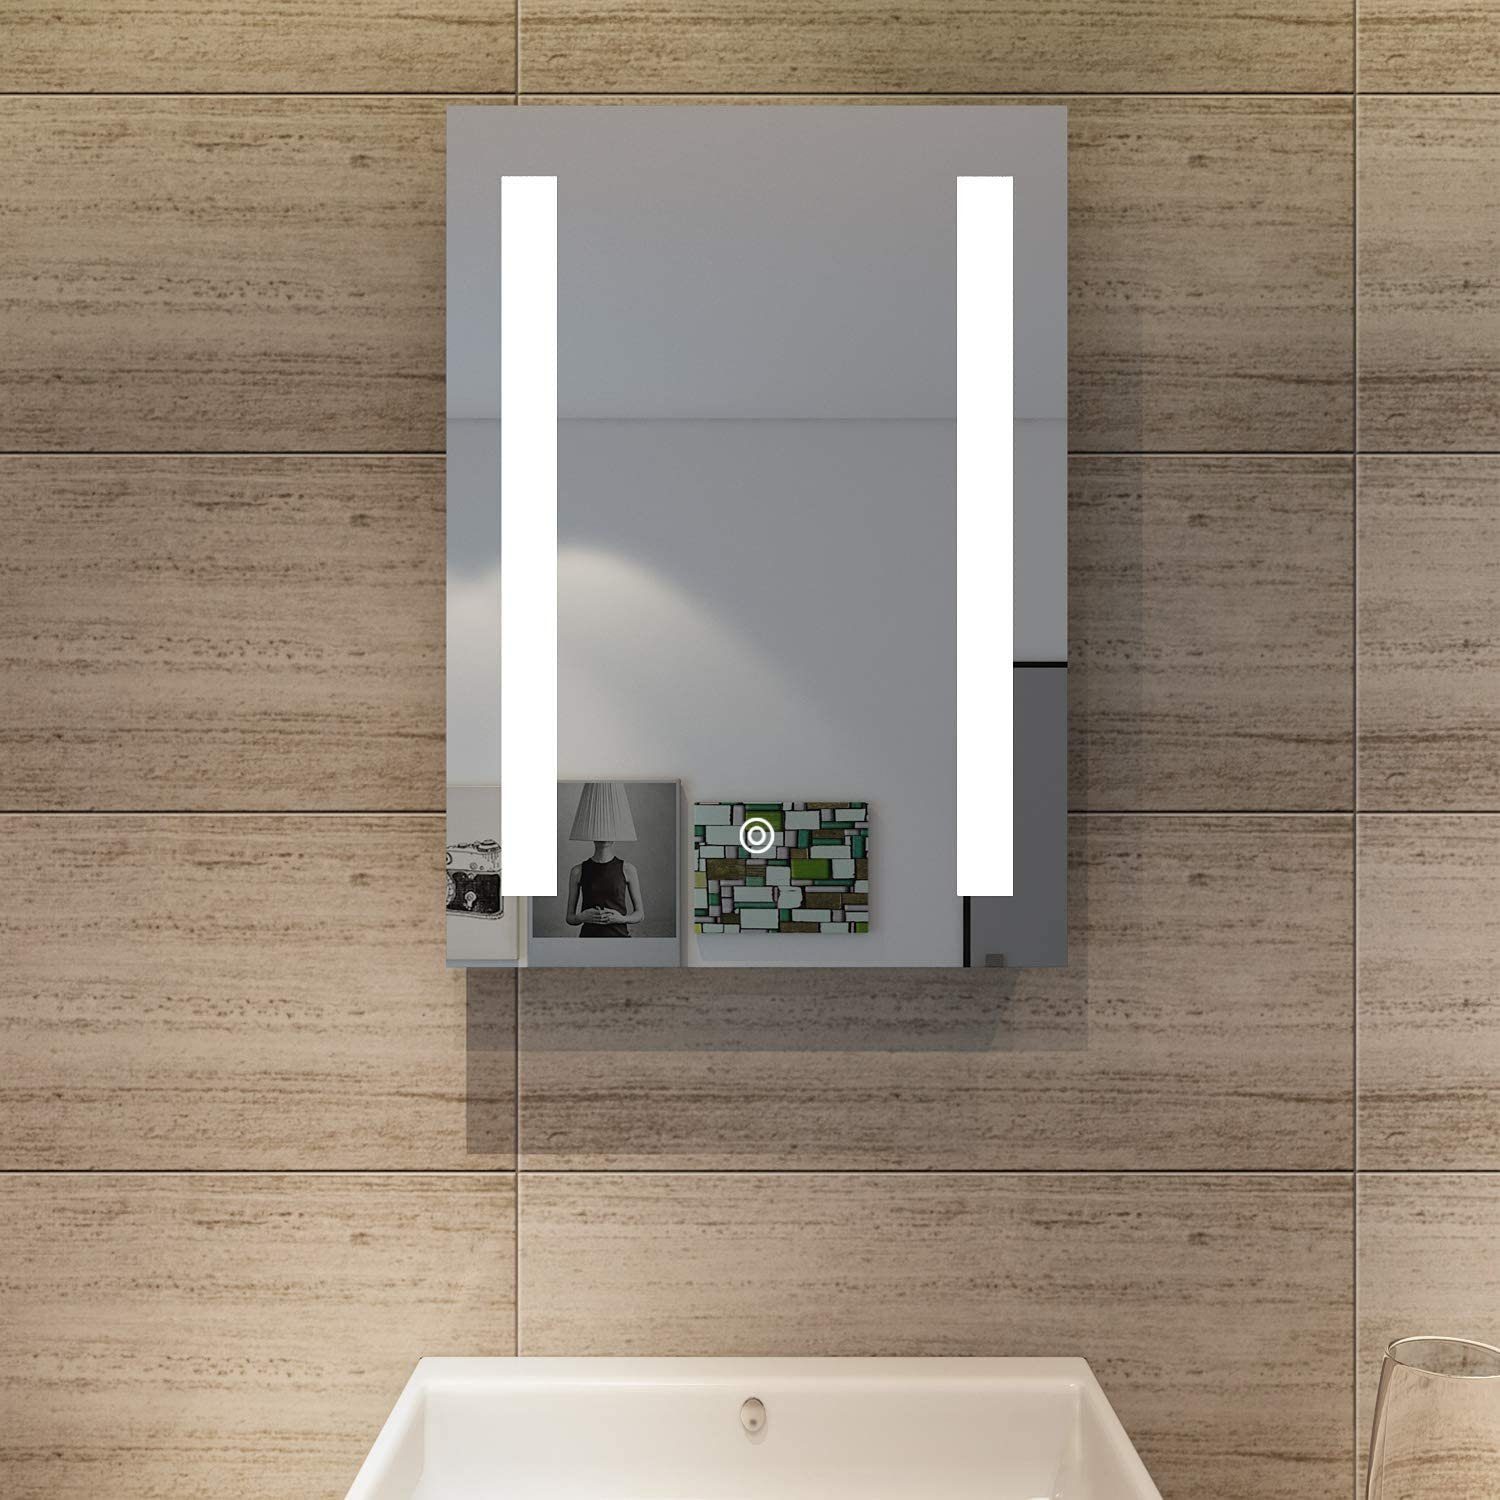 SONNI Badspiegel »Badspiegel mit Beleuchtung 45 x 60 cm kaltweiß IP44  Energiesparend Touch-Schalter Badezimmer Wandspiegel« online kaufen | OTTO